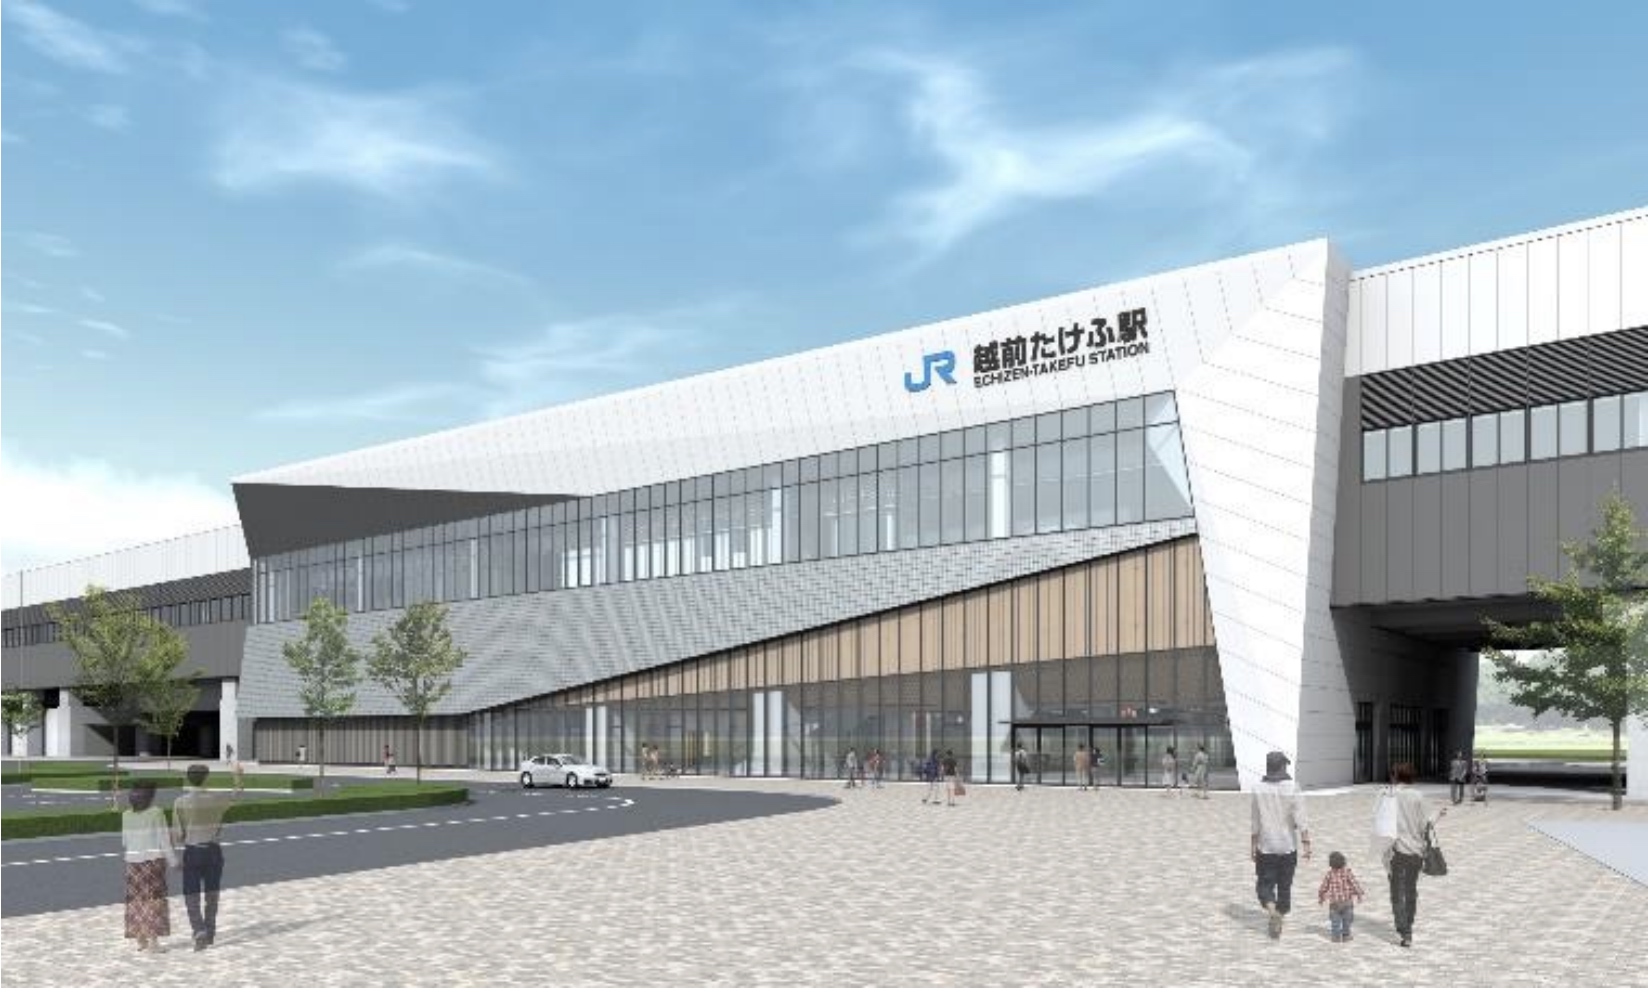 Eine Visualisierung des neuen Shinkansen-Bahnhofs Echizen-Takefu